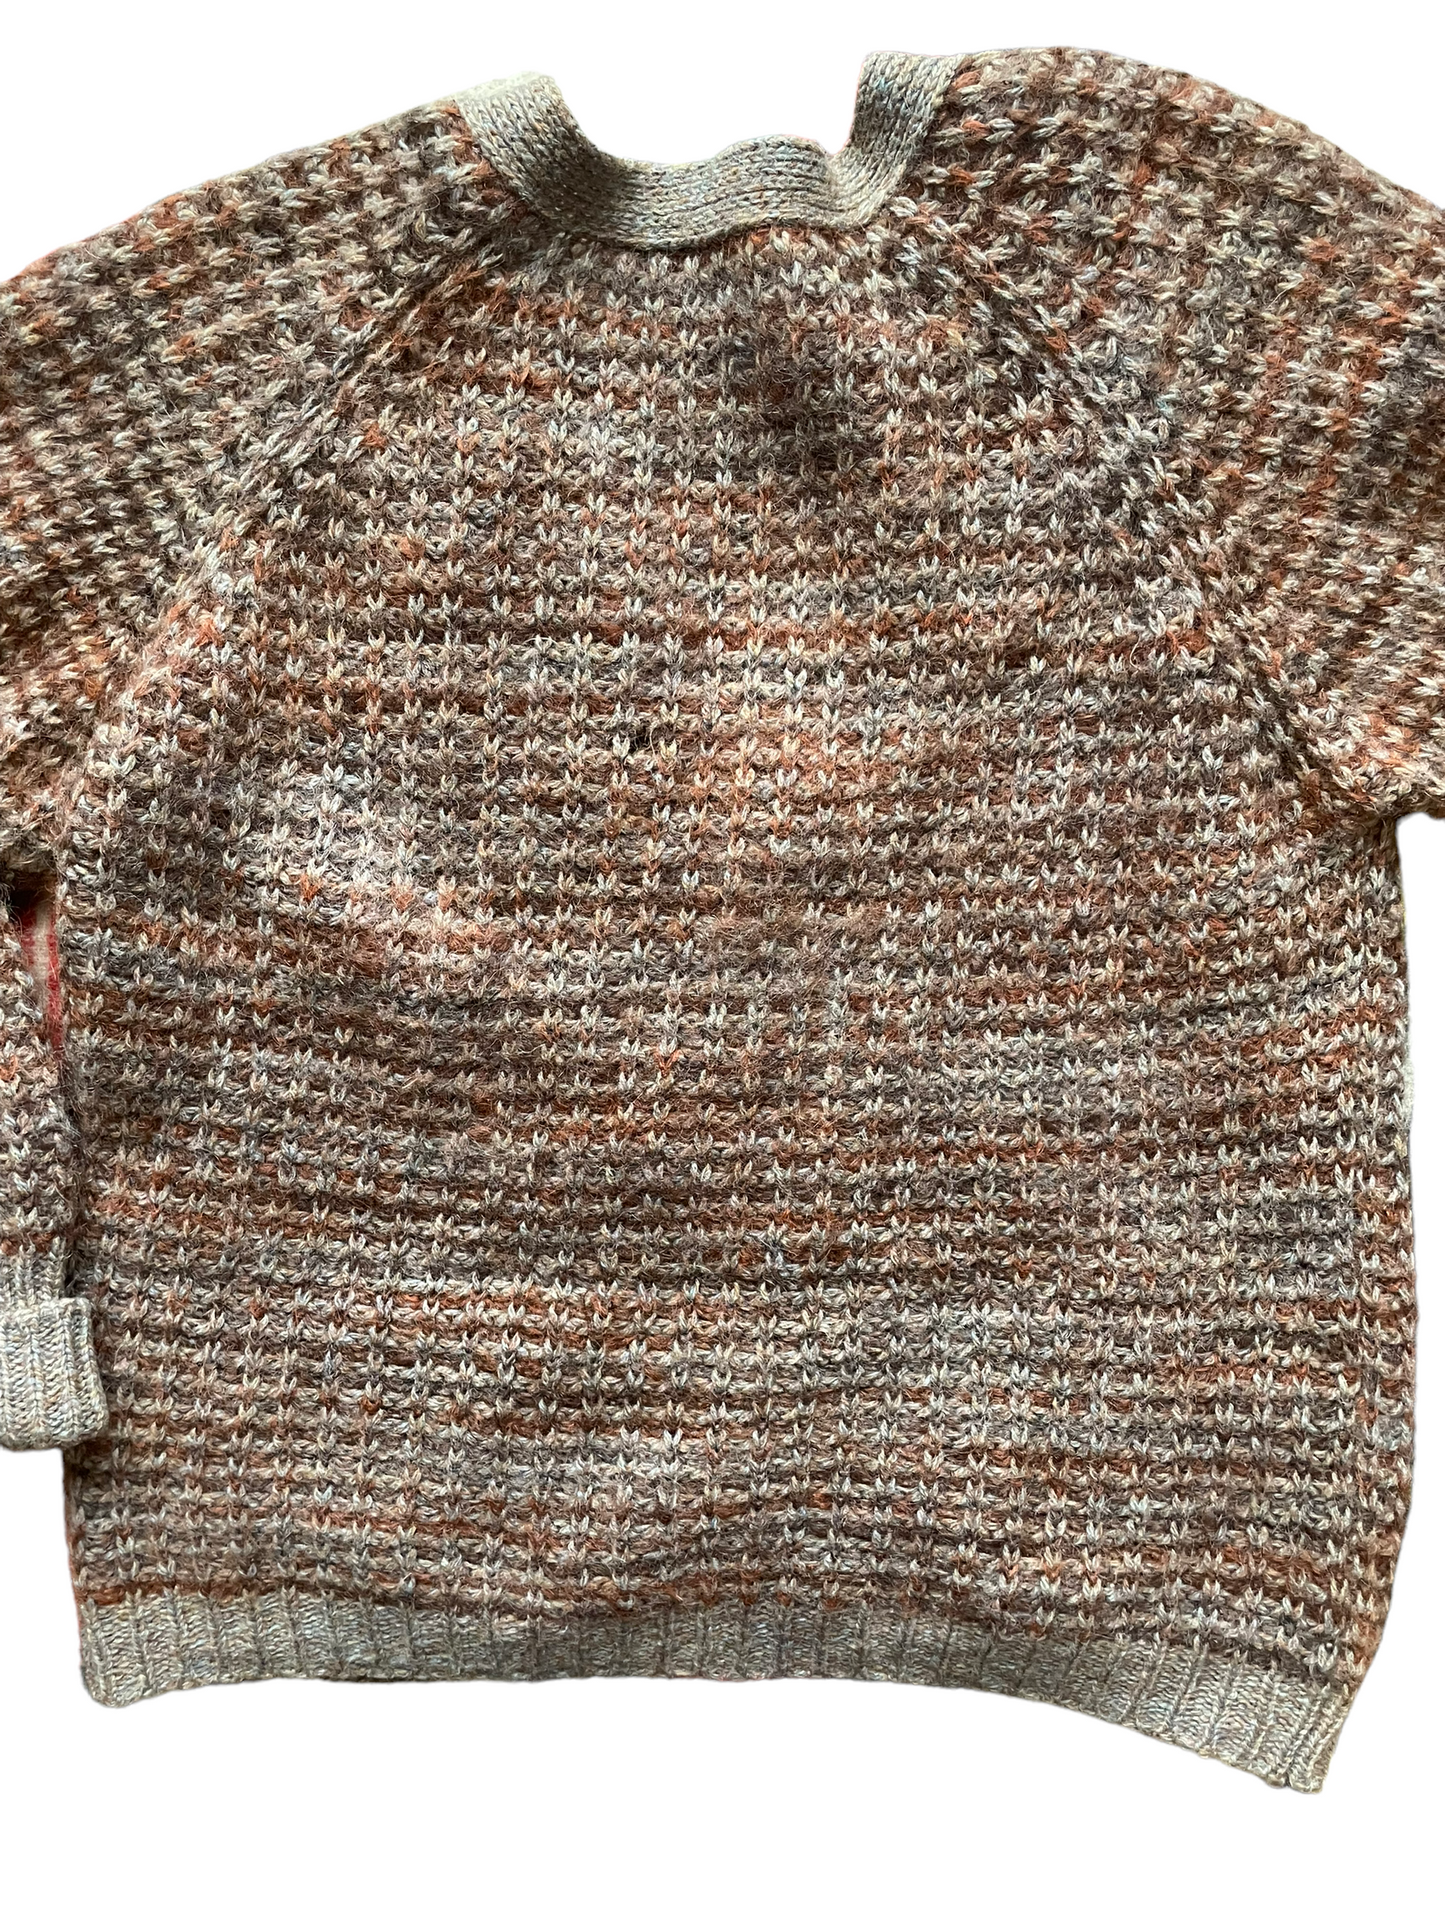 Vintage 1960s Shetland Wool Grampa Cardigan |  Barn Owl Vintage | Seattle Vintage Sweaters Full back view.